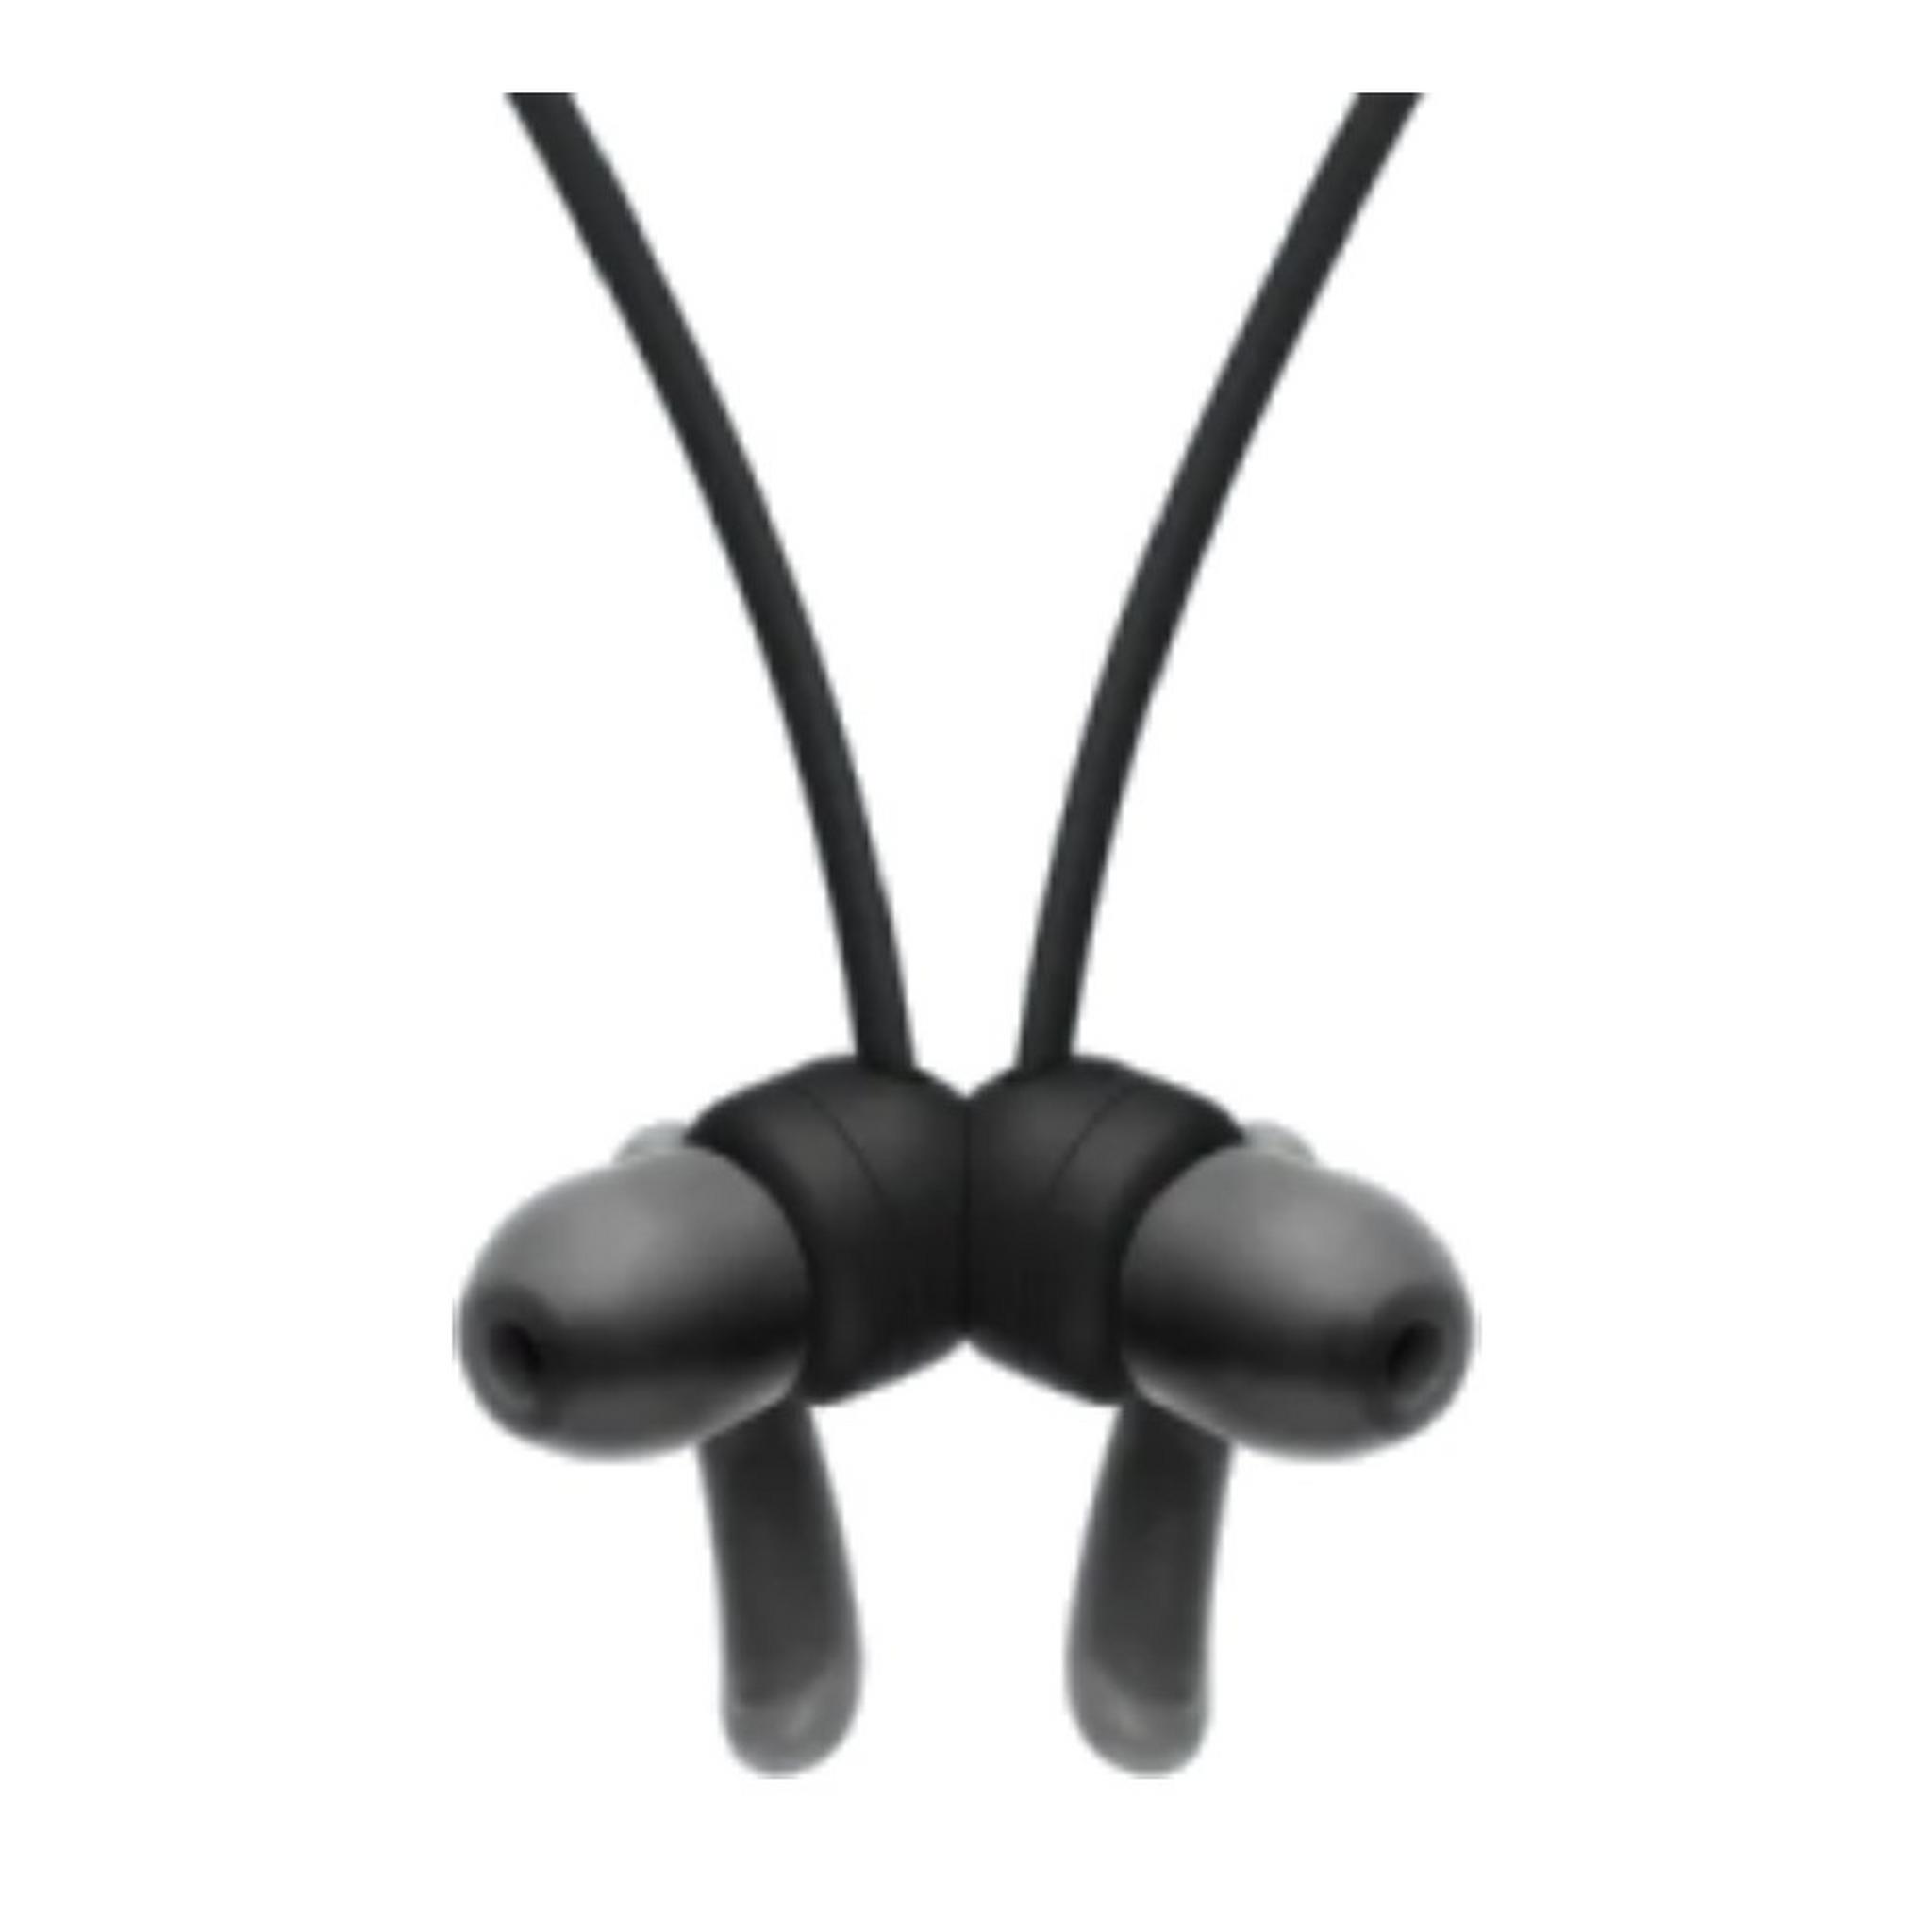 سماعات رأس داخل الأذن سوني WI-SP510 لاسلكية رياضية - أسود